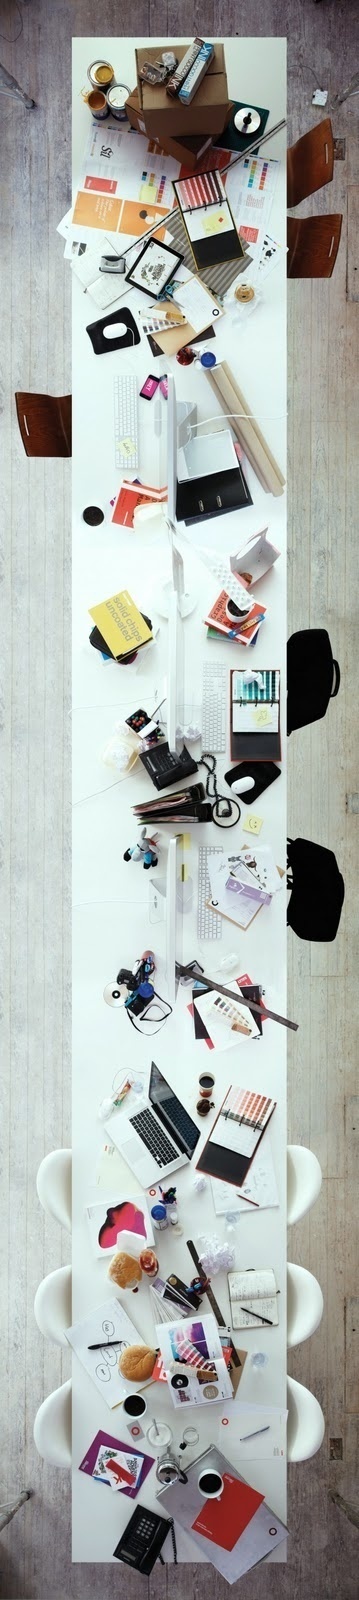 Image Spark - Image tagged #interior #design #grid #industrial #desk